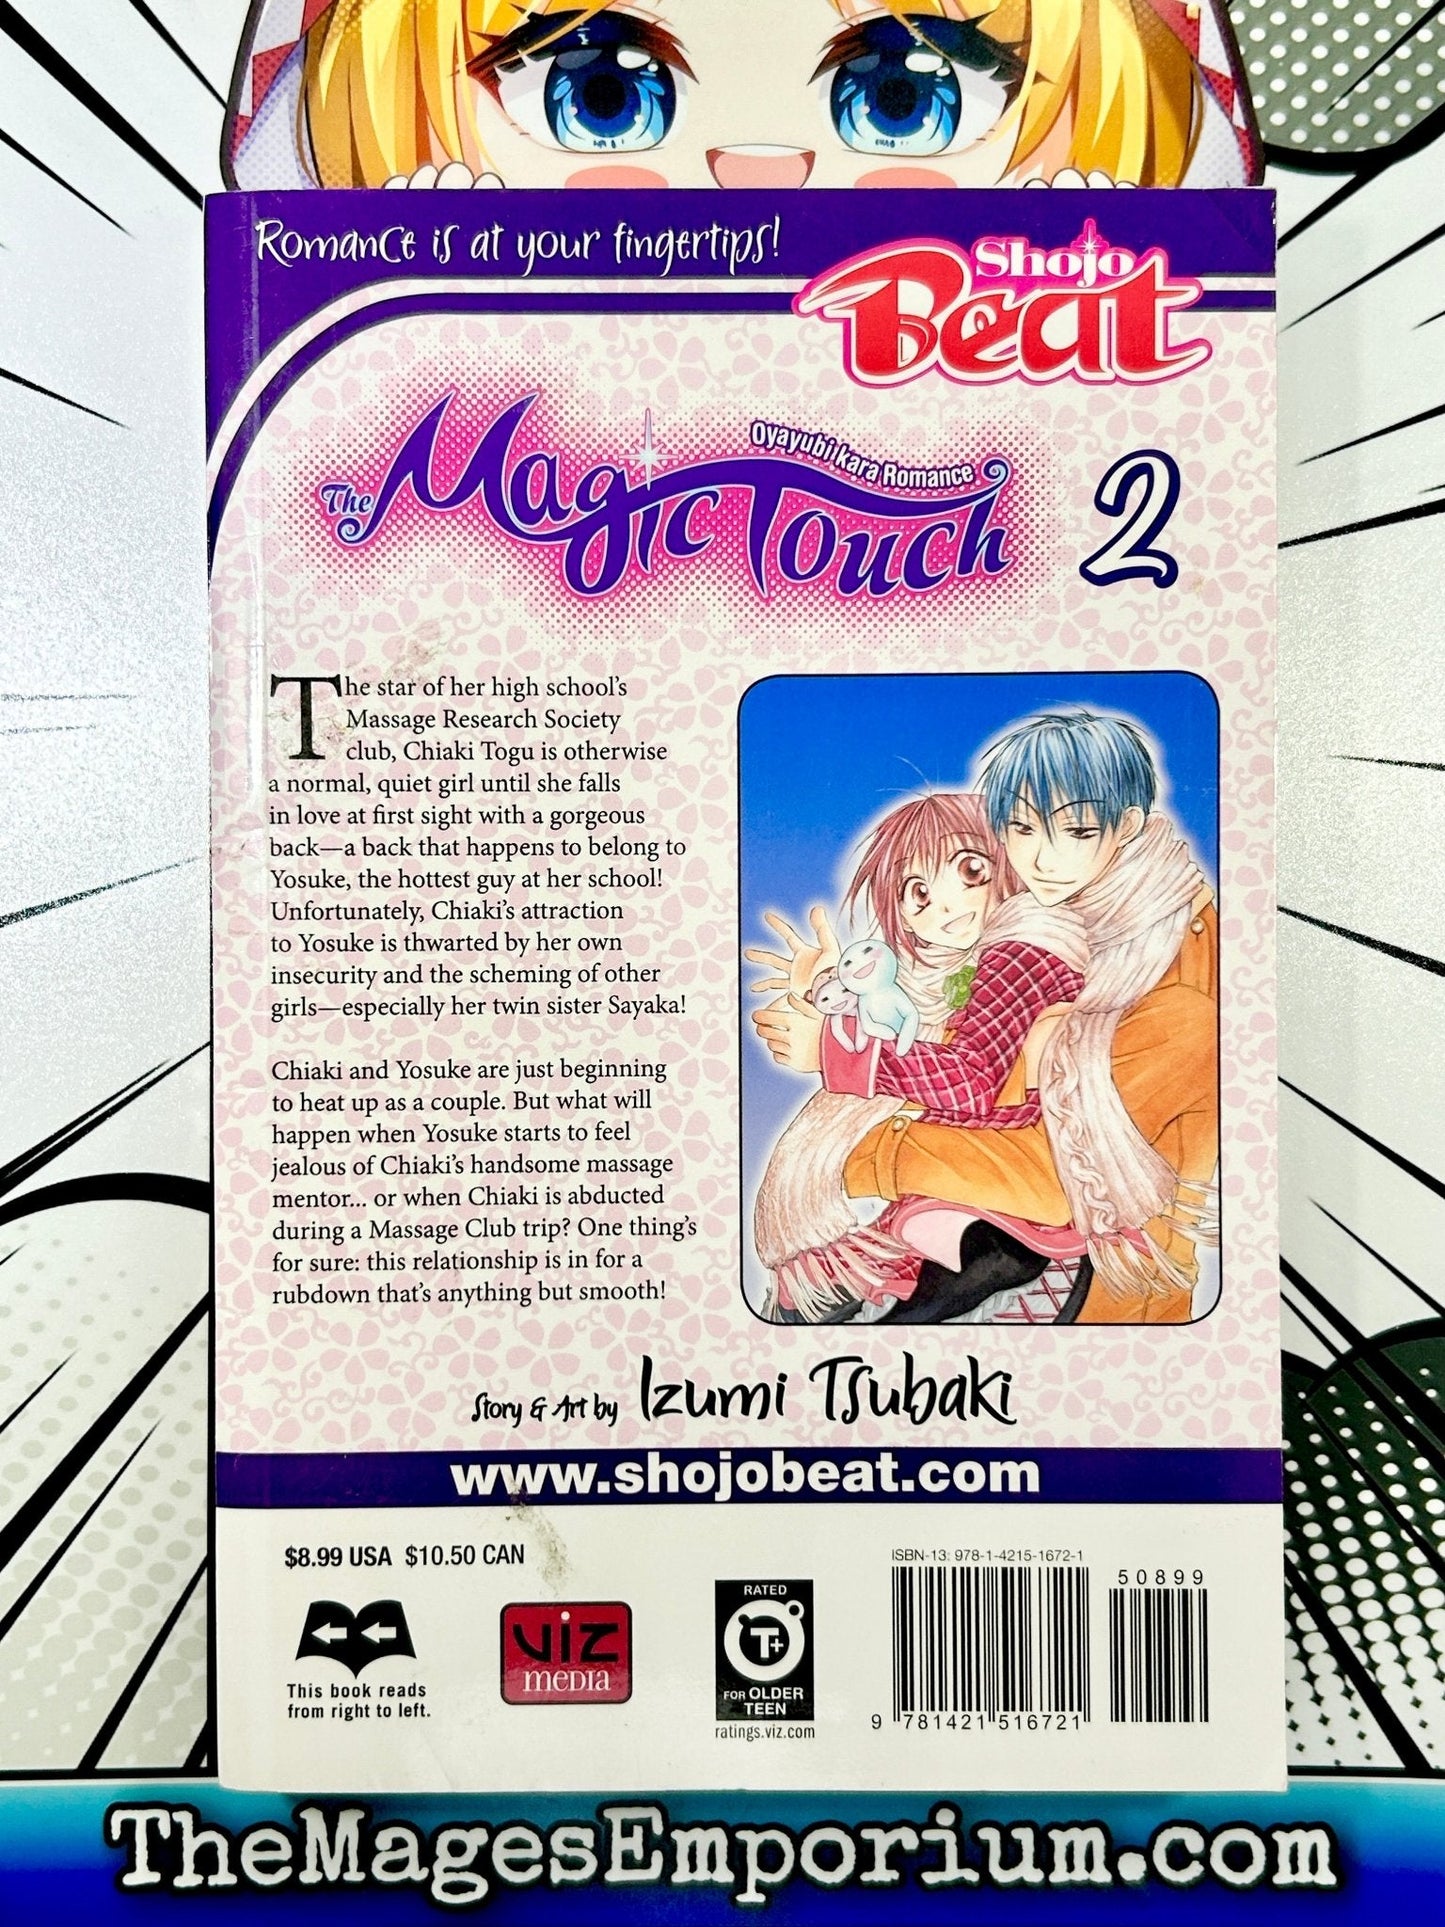 Magic Touch Vol 2